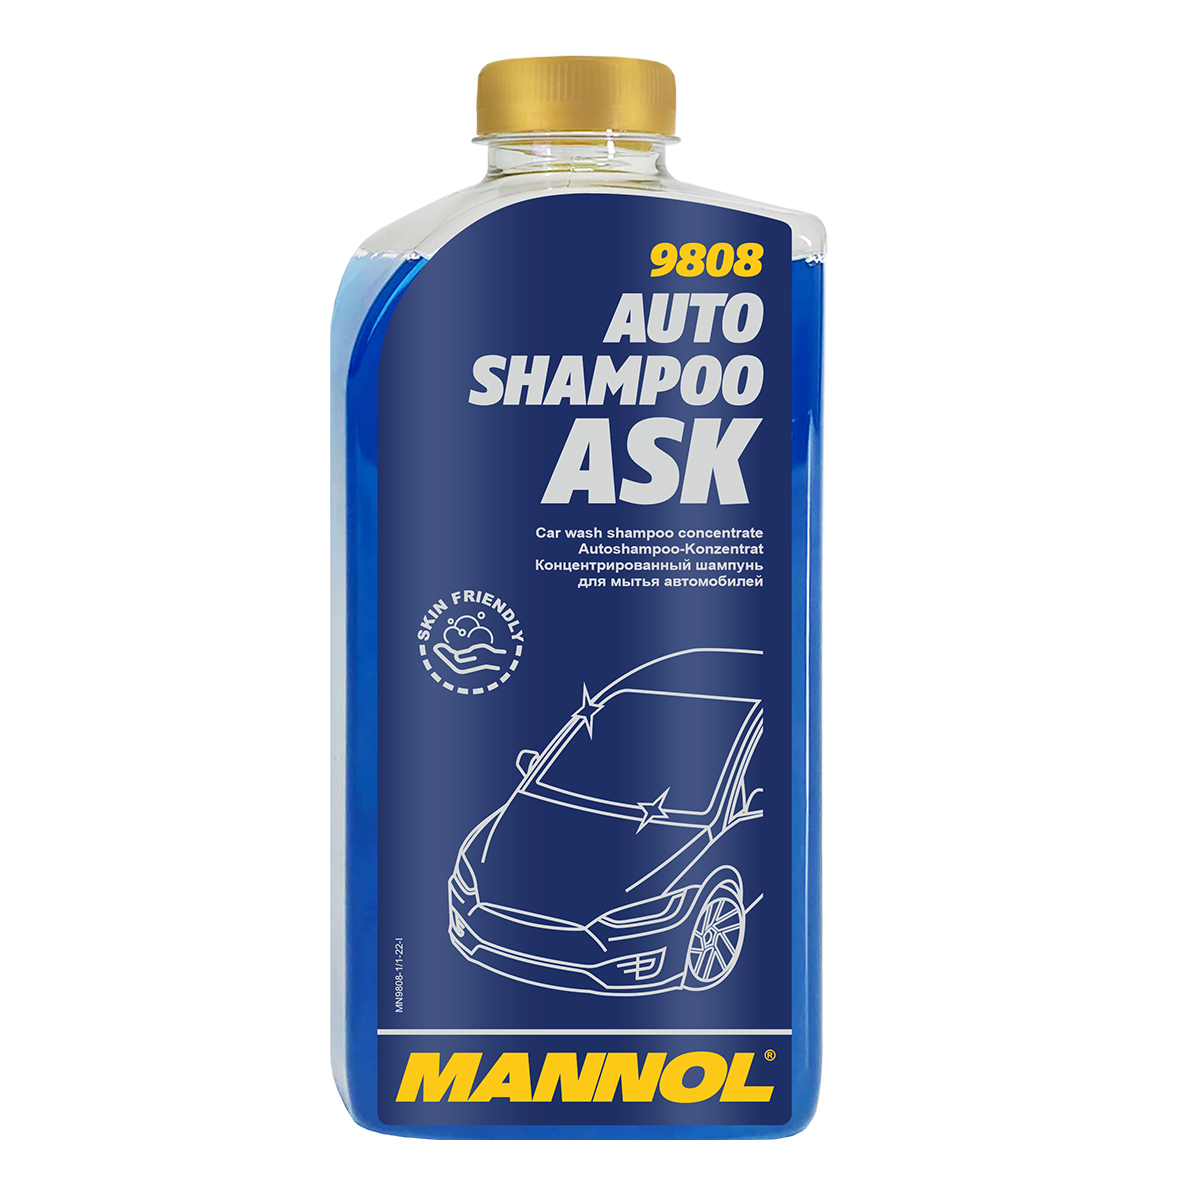 Auto-Shampoo 1000ml Dosierflasche - BEMANGO